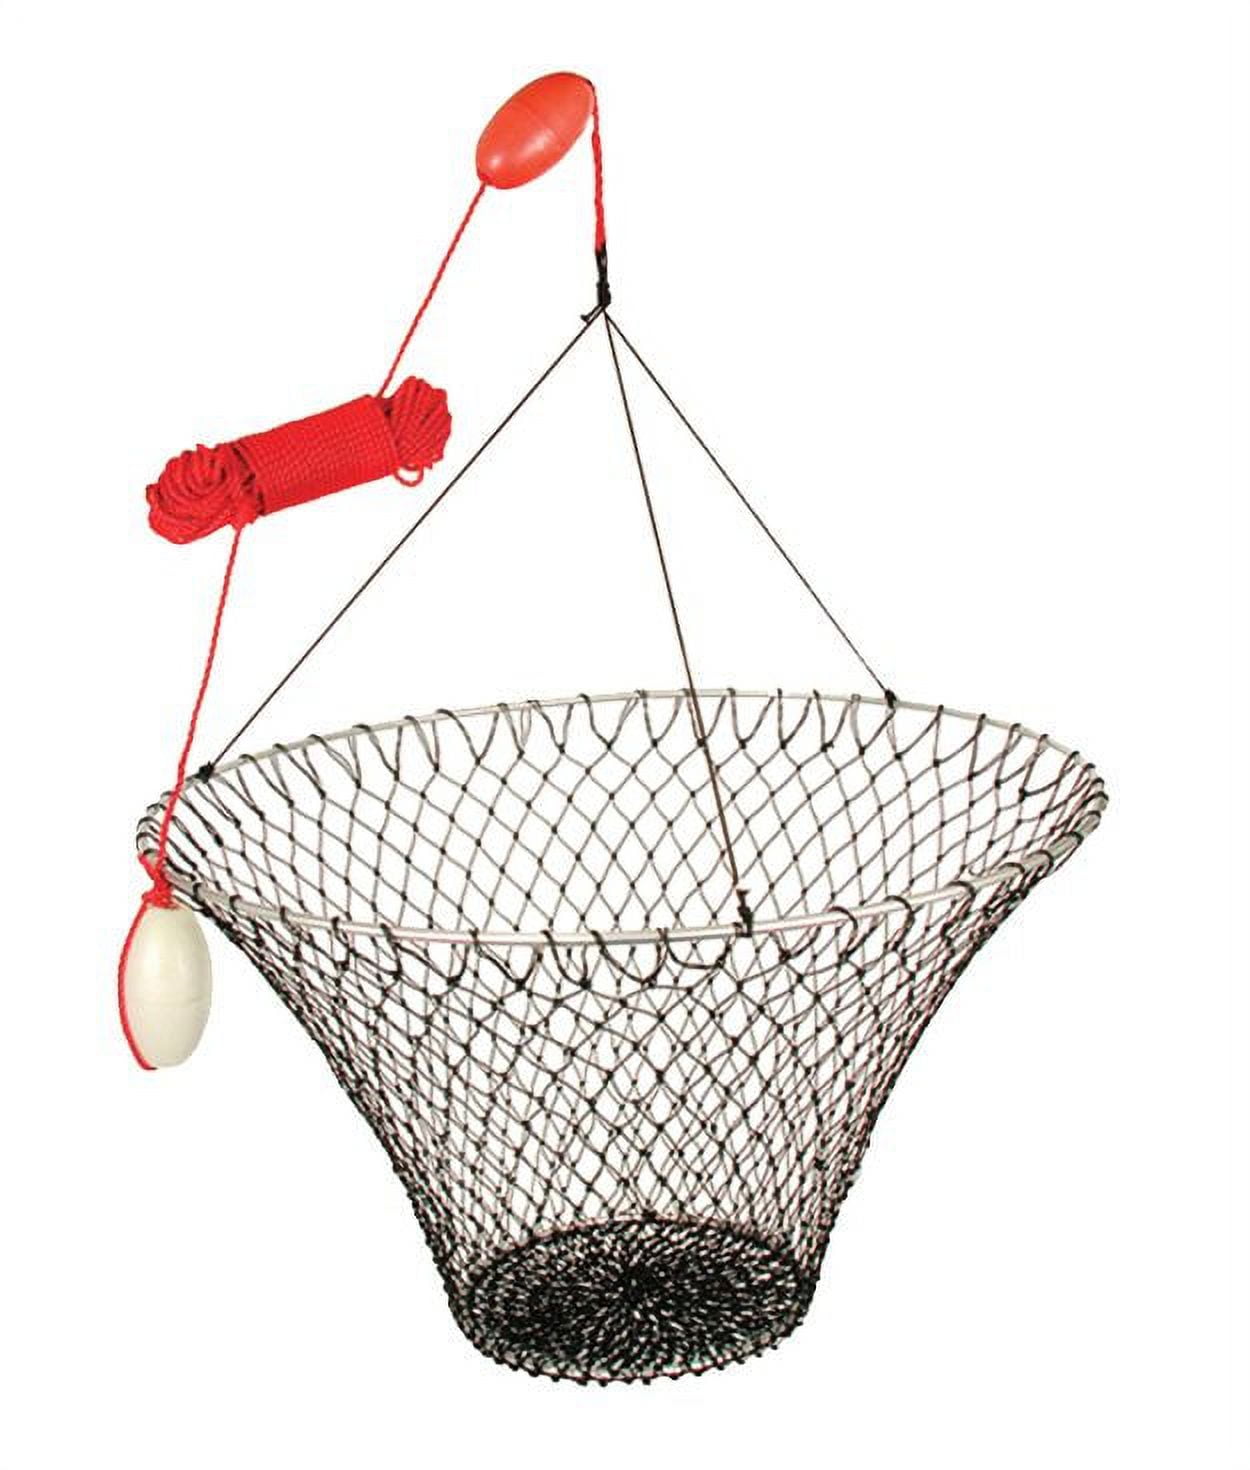 Crabbing Hoop Net